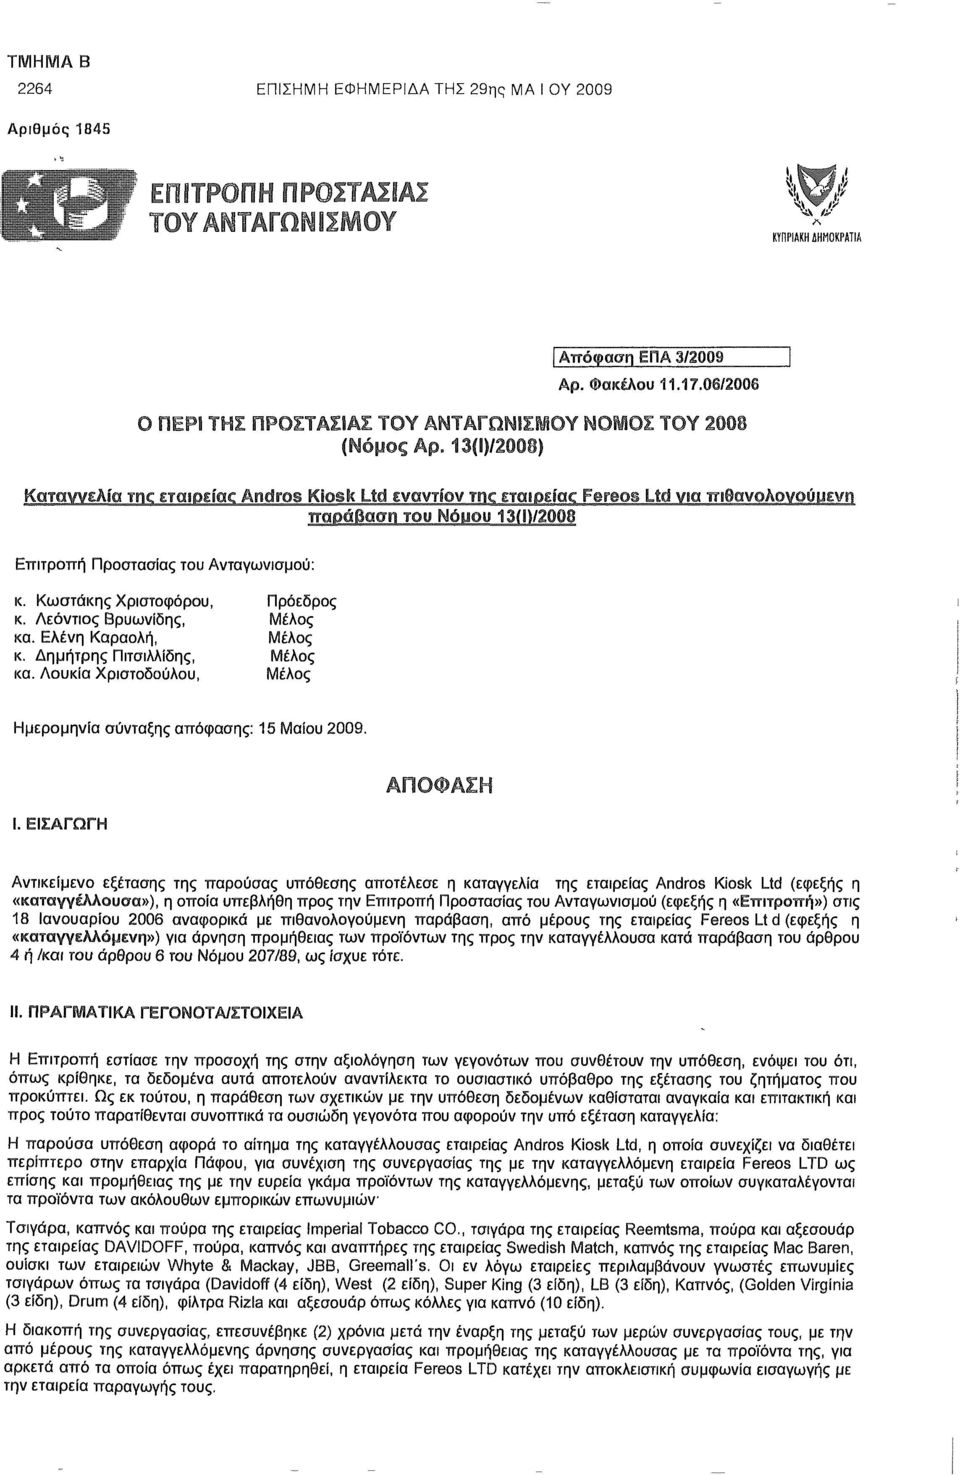 13(Ι)/2008) Καταγγελία τικ εταιρείοκ Andros Kfosk Ltd εναντίον τικ ETaiPEioc Fereos Ltd νια πιθανοαονούρενη τταοάβασπ TOO Noyou 1310/2008 Επιτροπή Προστασίας του Ανταγωνισμού: κ.